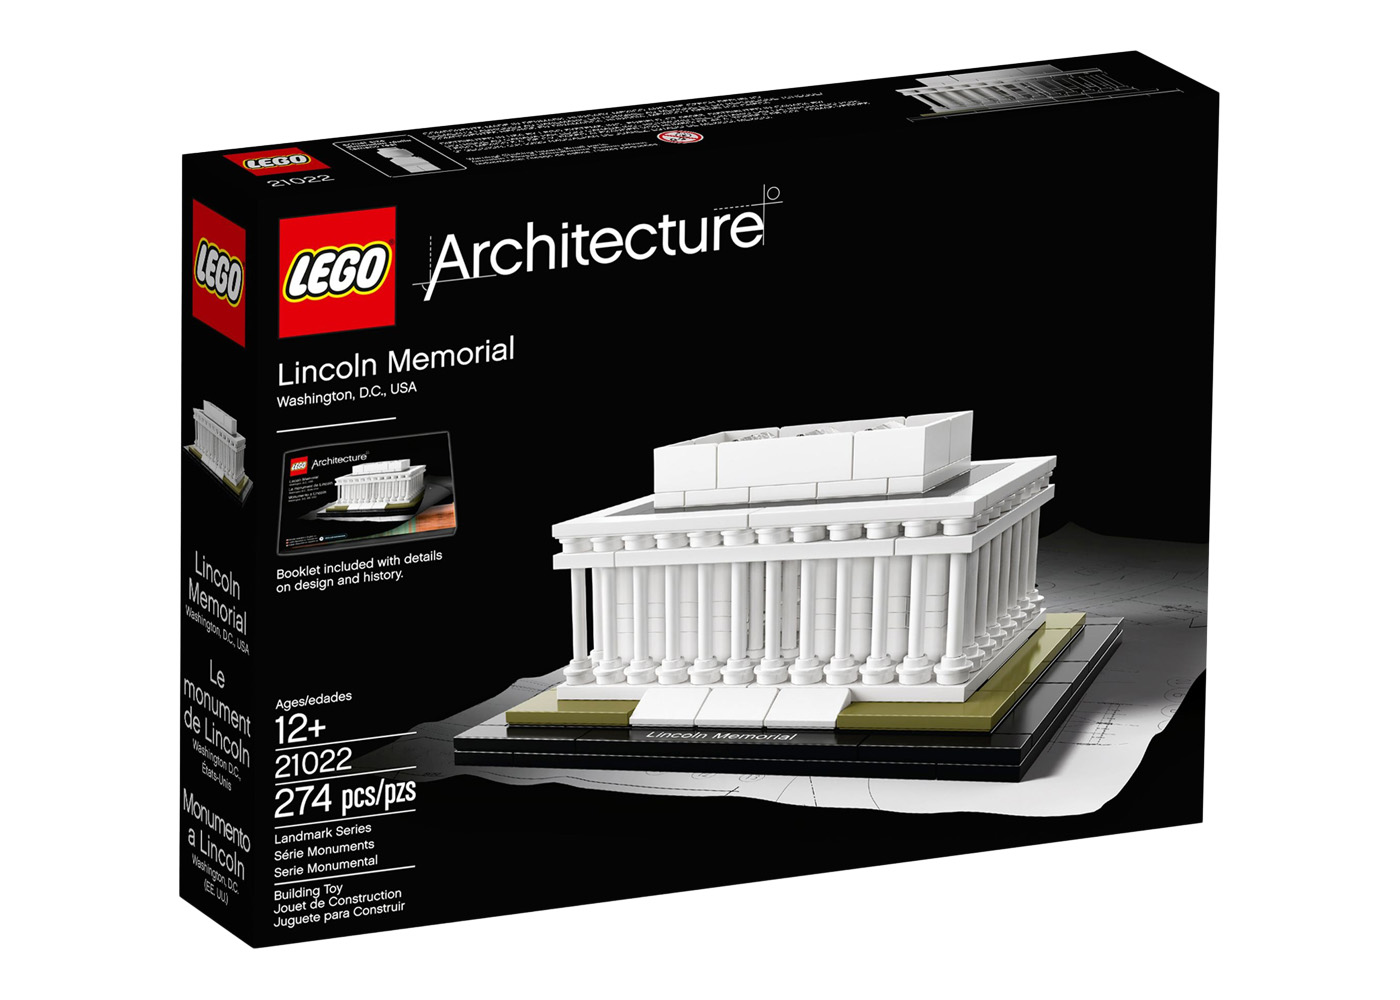 LEGO Architecture Solomon Guggenheim Museum Set 21004 - US